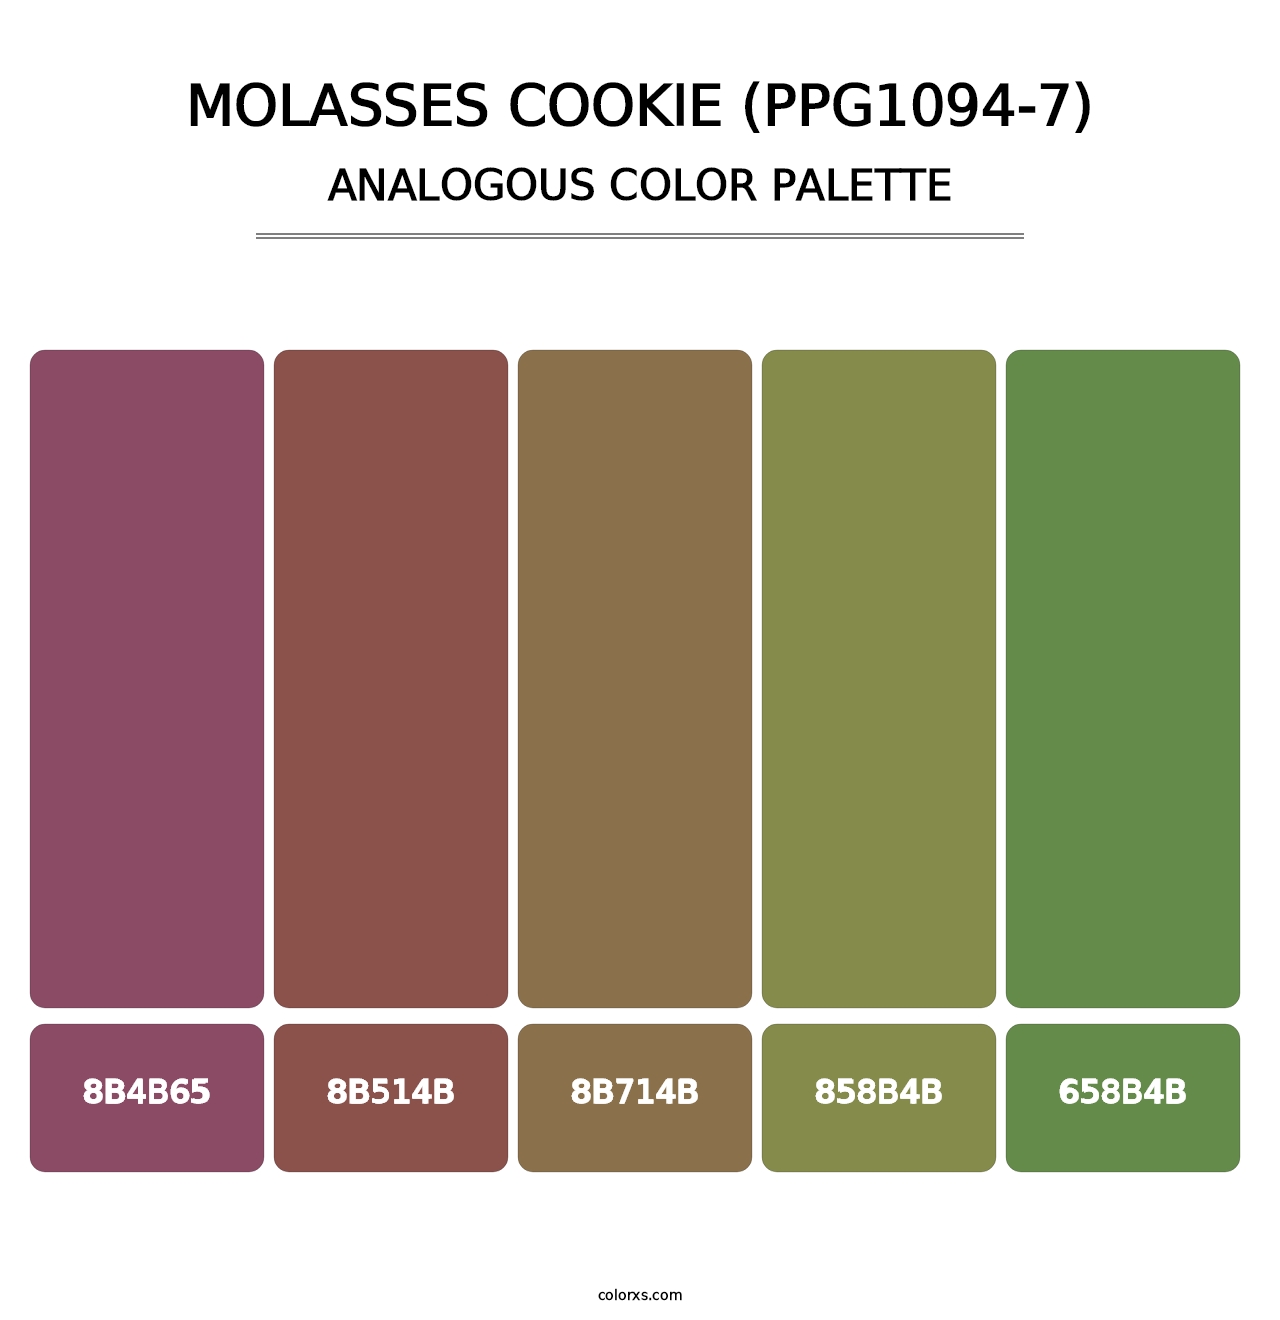 Molasses Cookie (PPG1094-7) - Analogous Color Palette